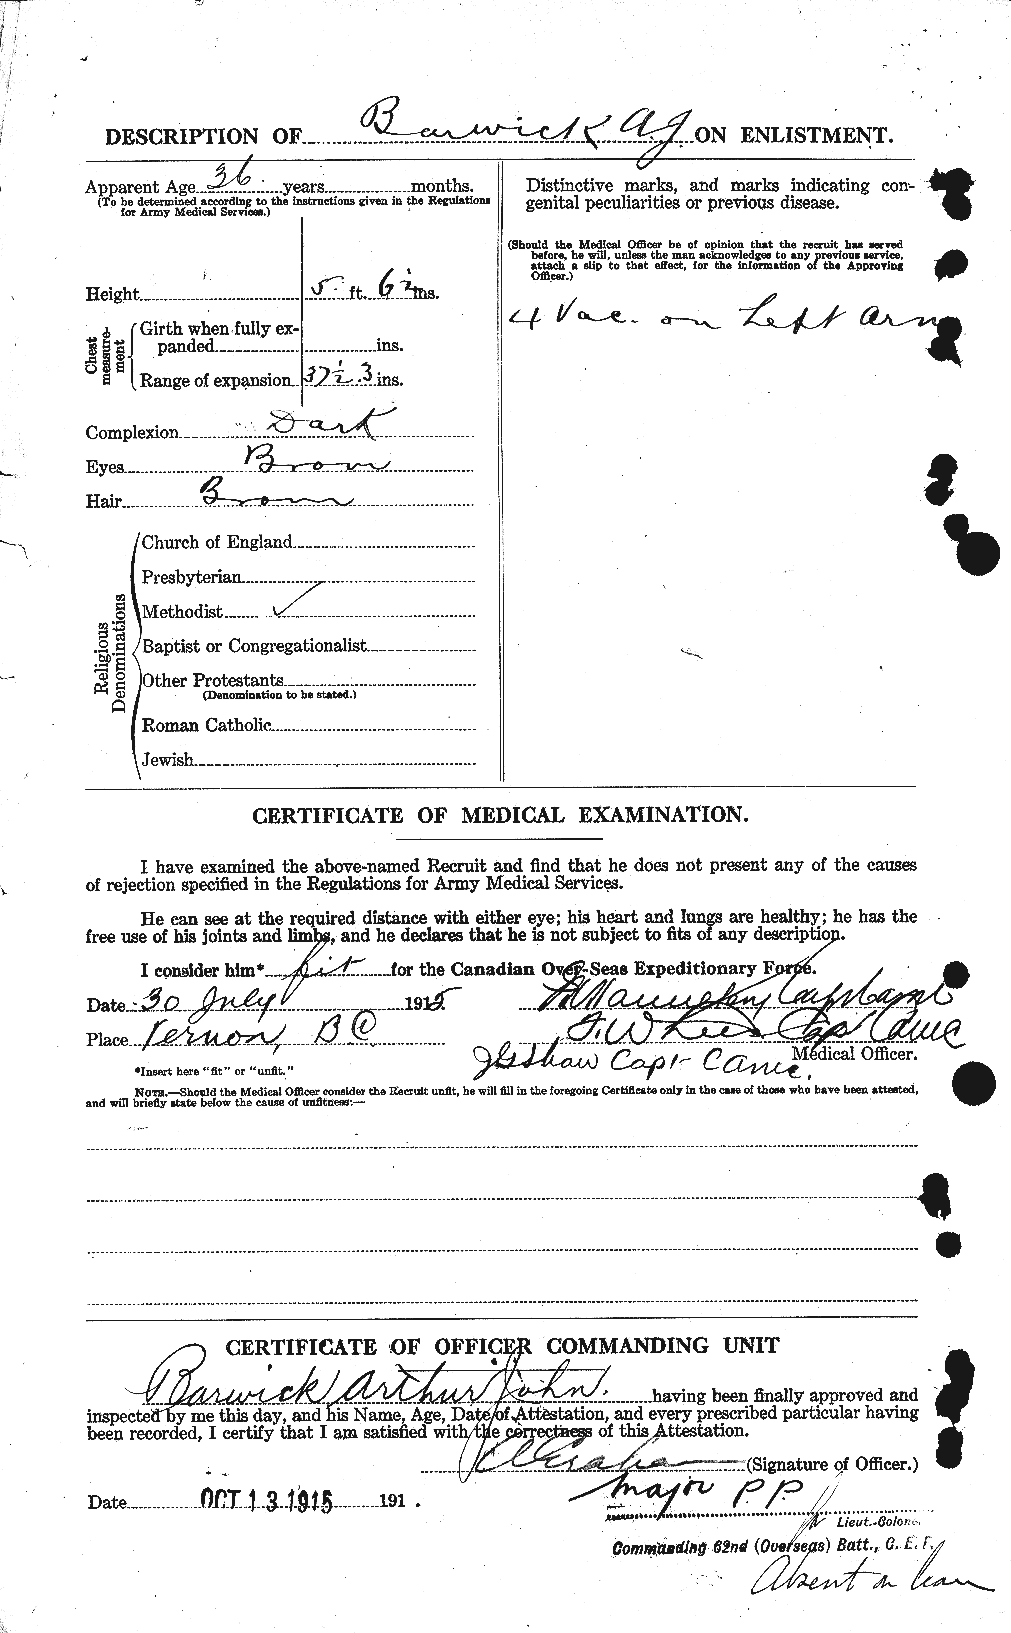 Dossiers du Personnel de la Première Guerre mondiale - CEC 222002b